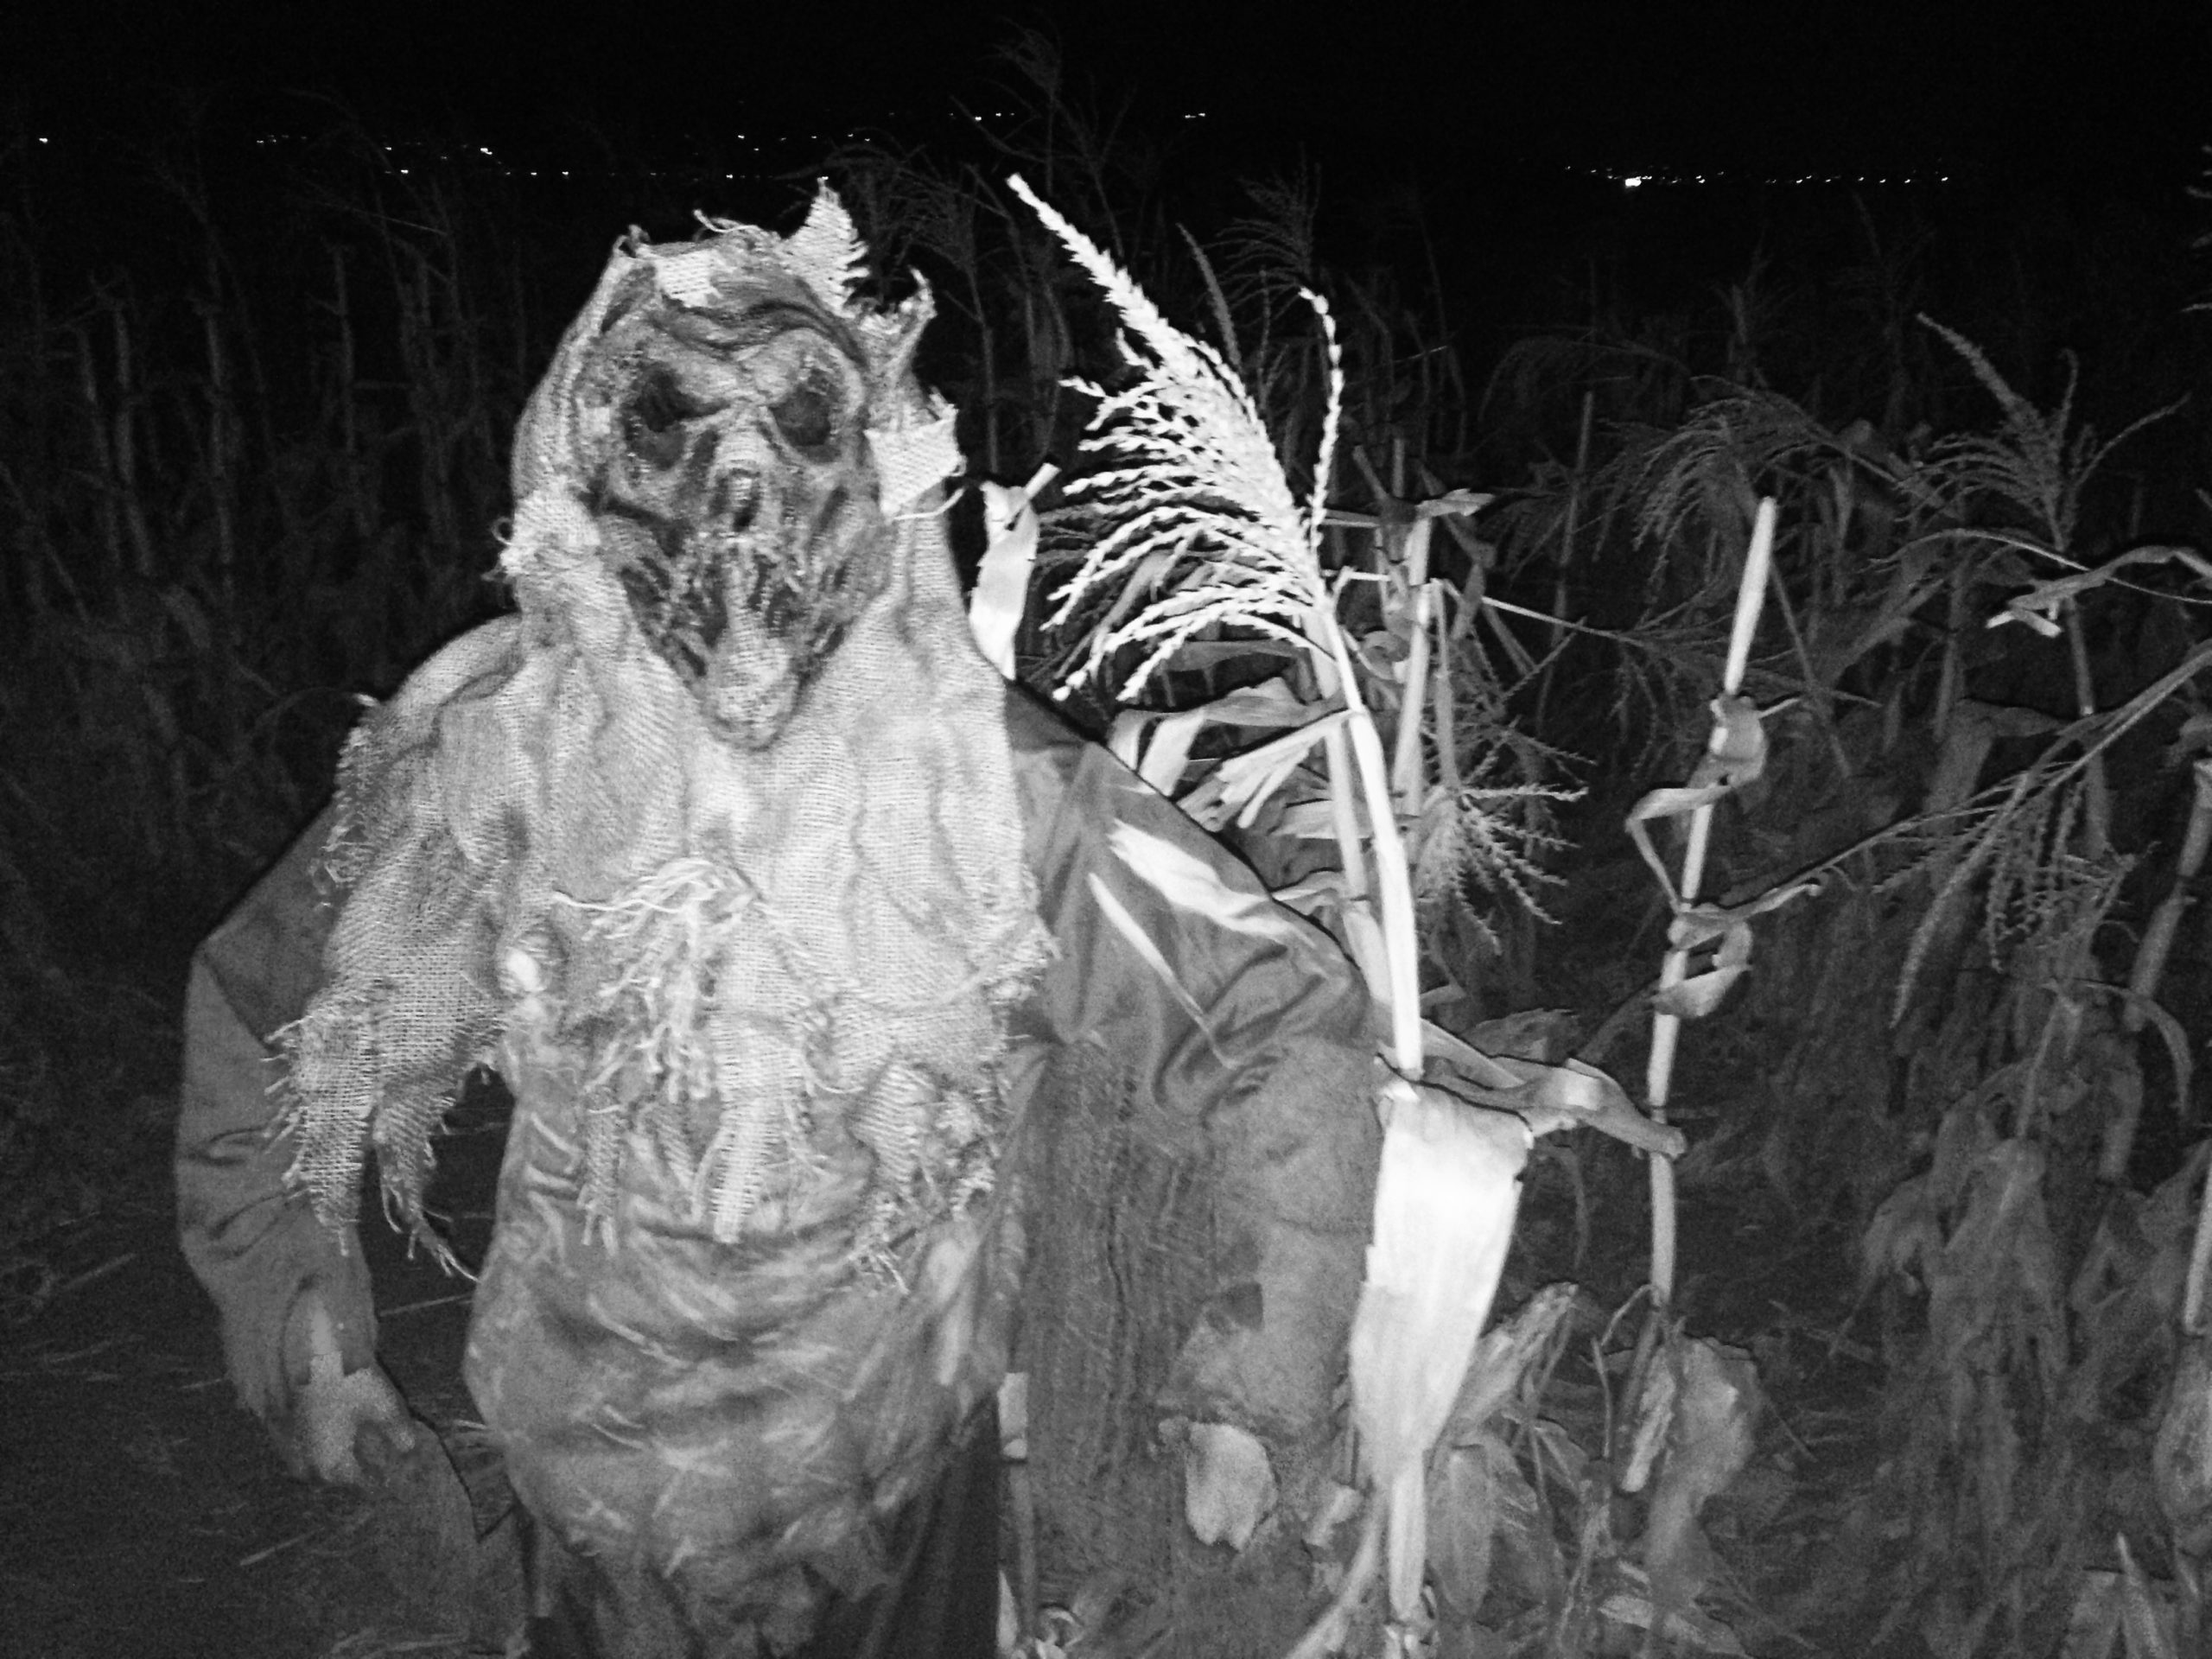 andelin family farm haunted corn maze